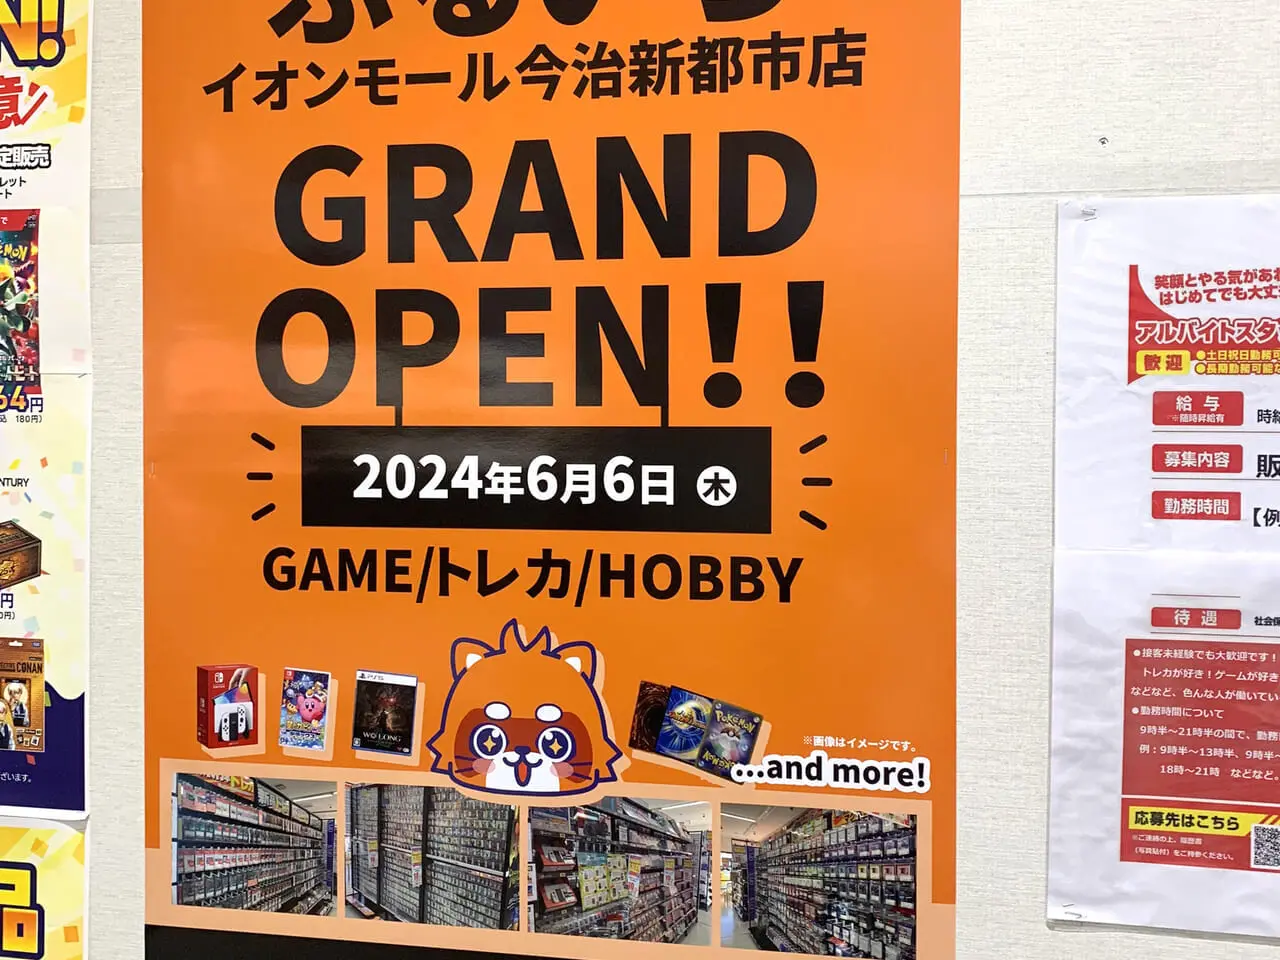 イオンモール今治新都市内に新しいお店がオープン予定!!